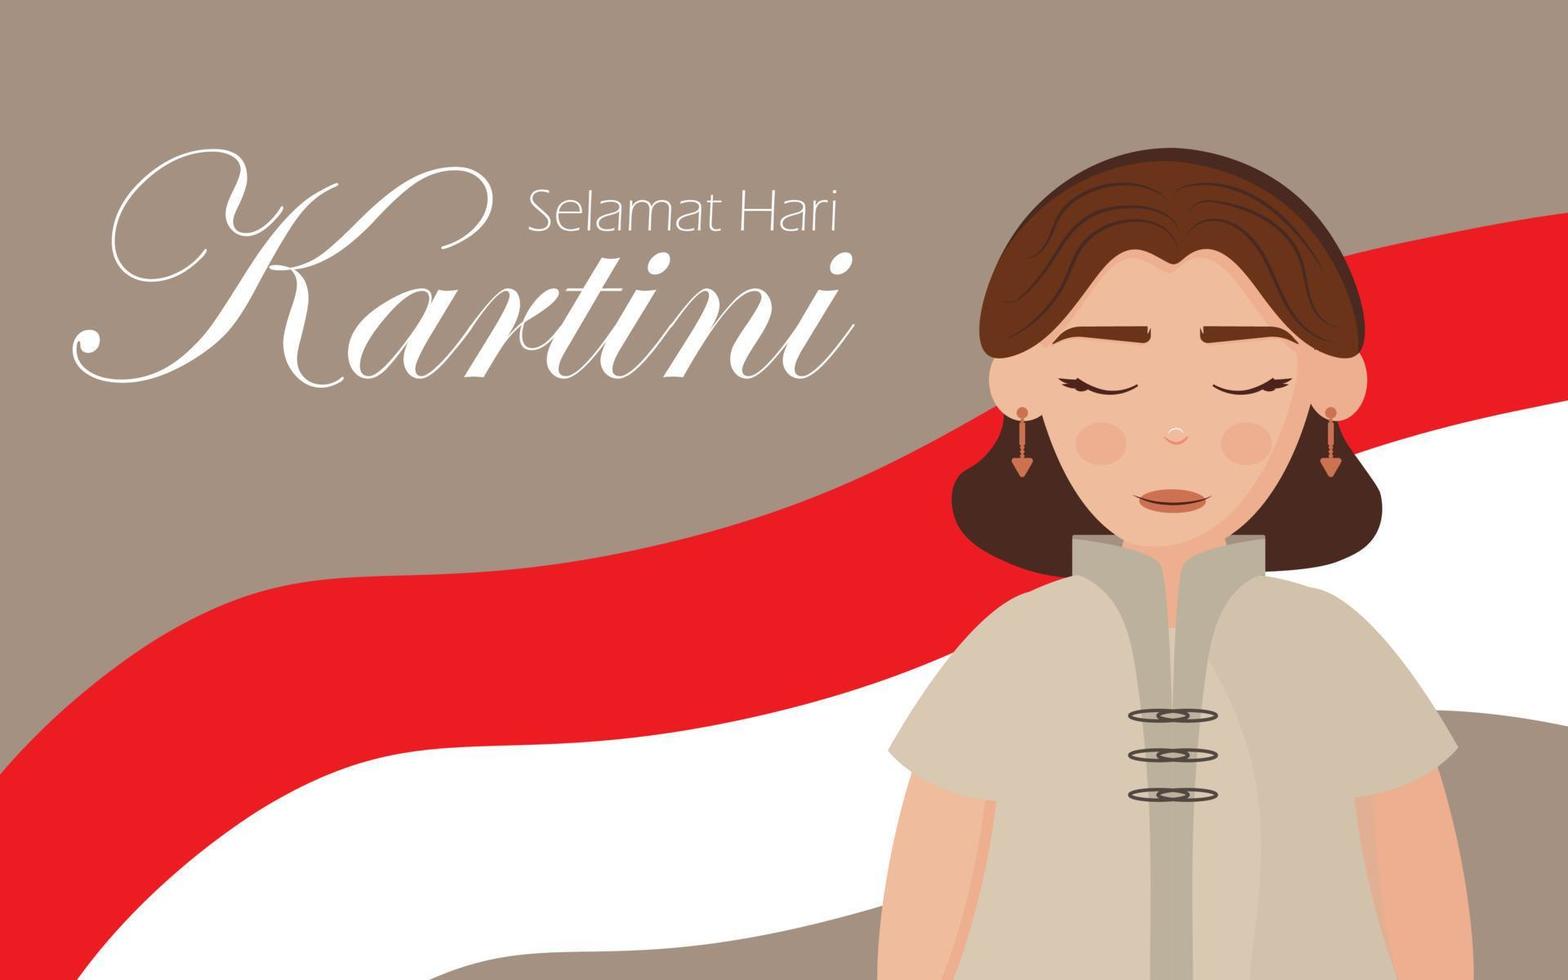 banner festivo per il giorno di selamat hari immagini felice giorno di kartini. eroe indonesiano, ha difeso i diritti di una ragazza e l'educazione delle donne. vettore